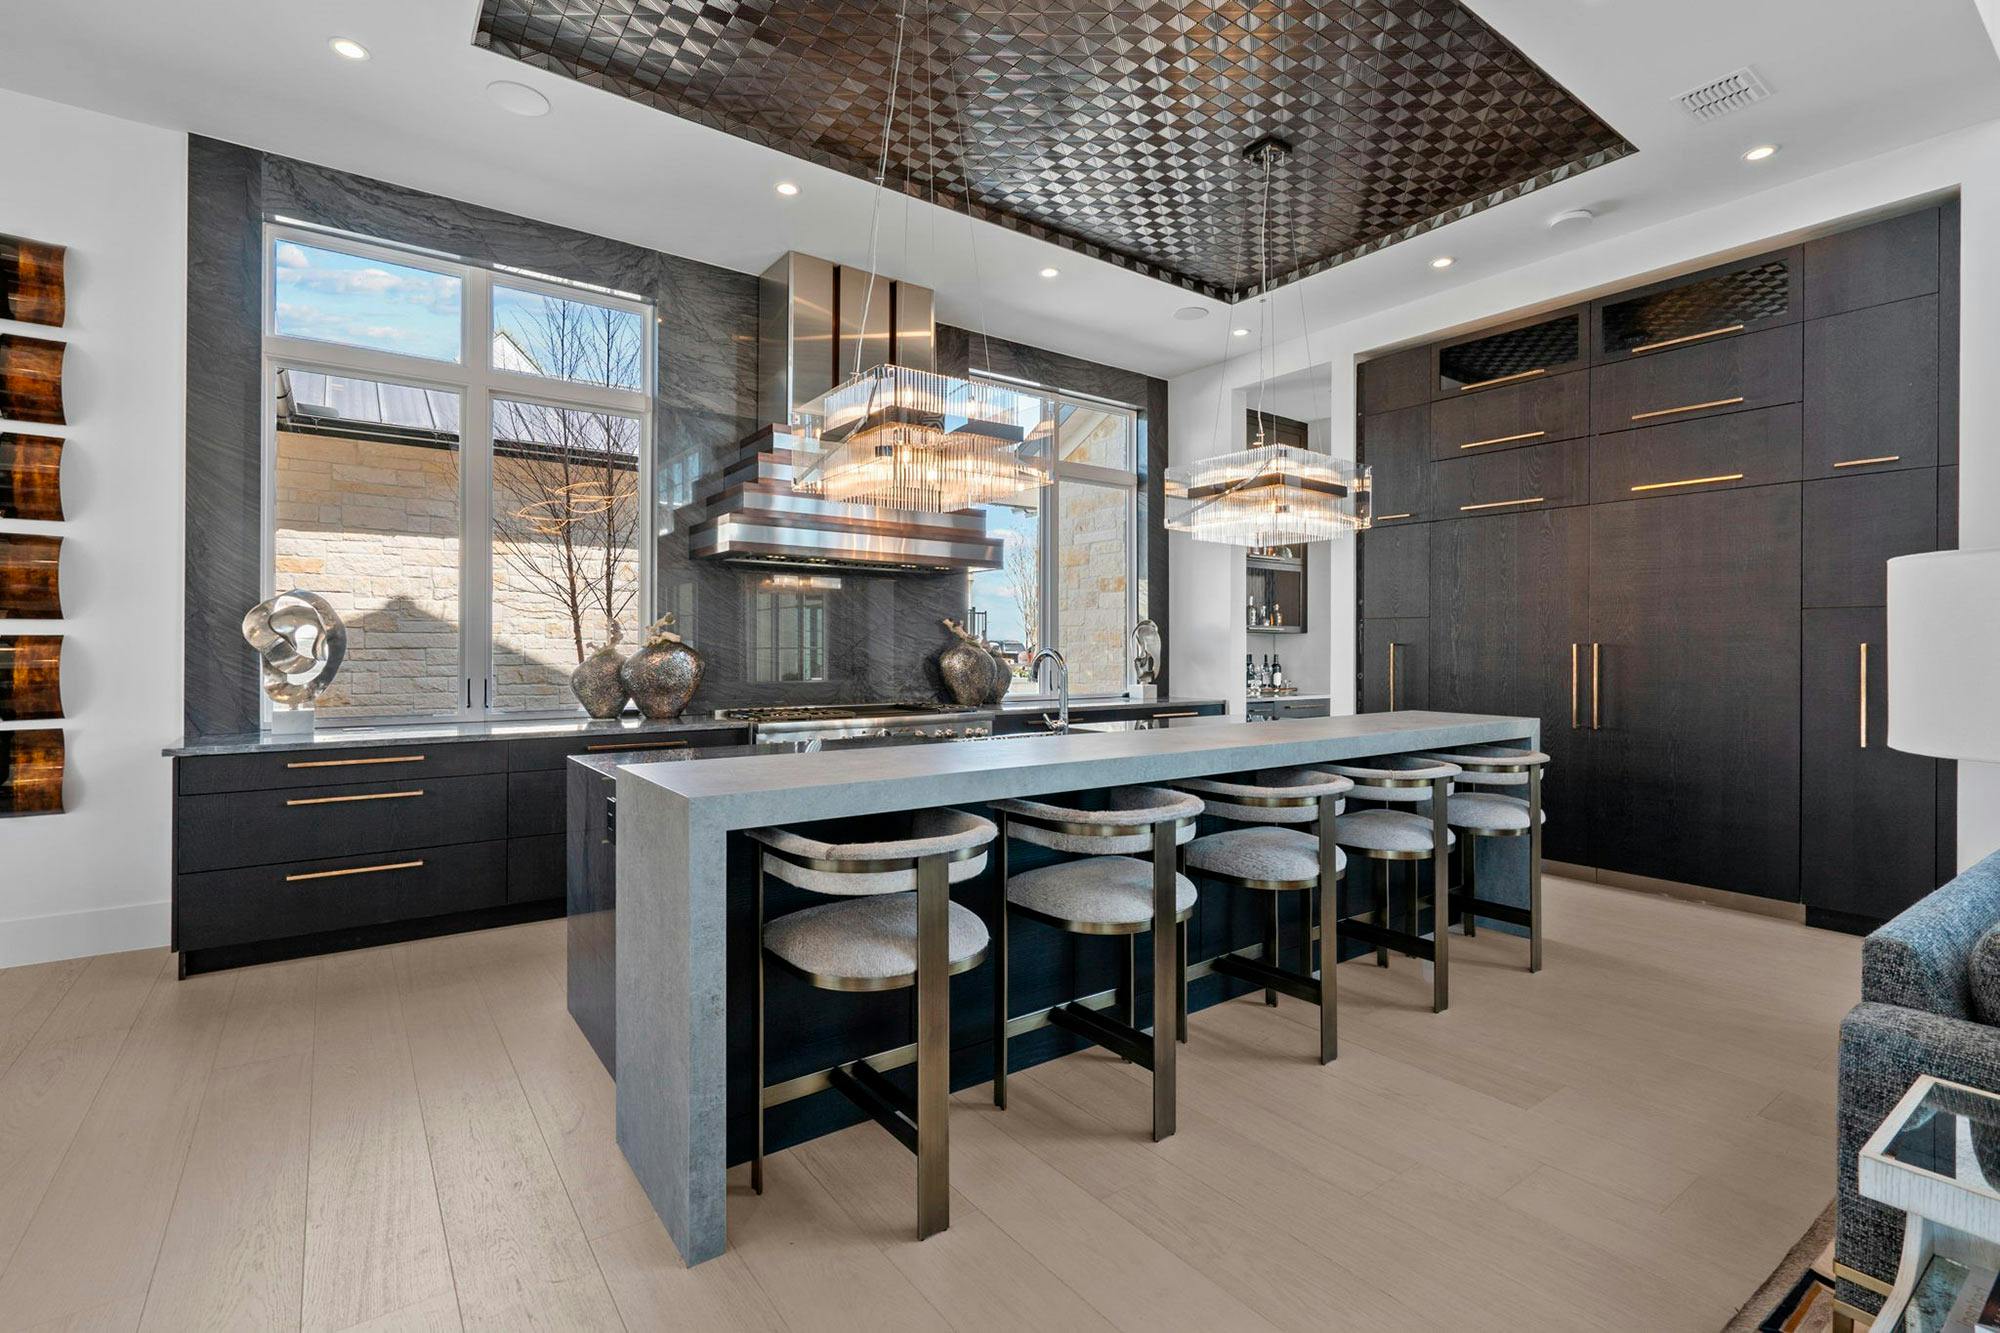 Bildnummer 40 des aktuellen Abschnitts von DKTN Sirius adds a welcoming touch to the kitchens of a residential development in Dubai von Cosentino Deutschland